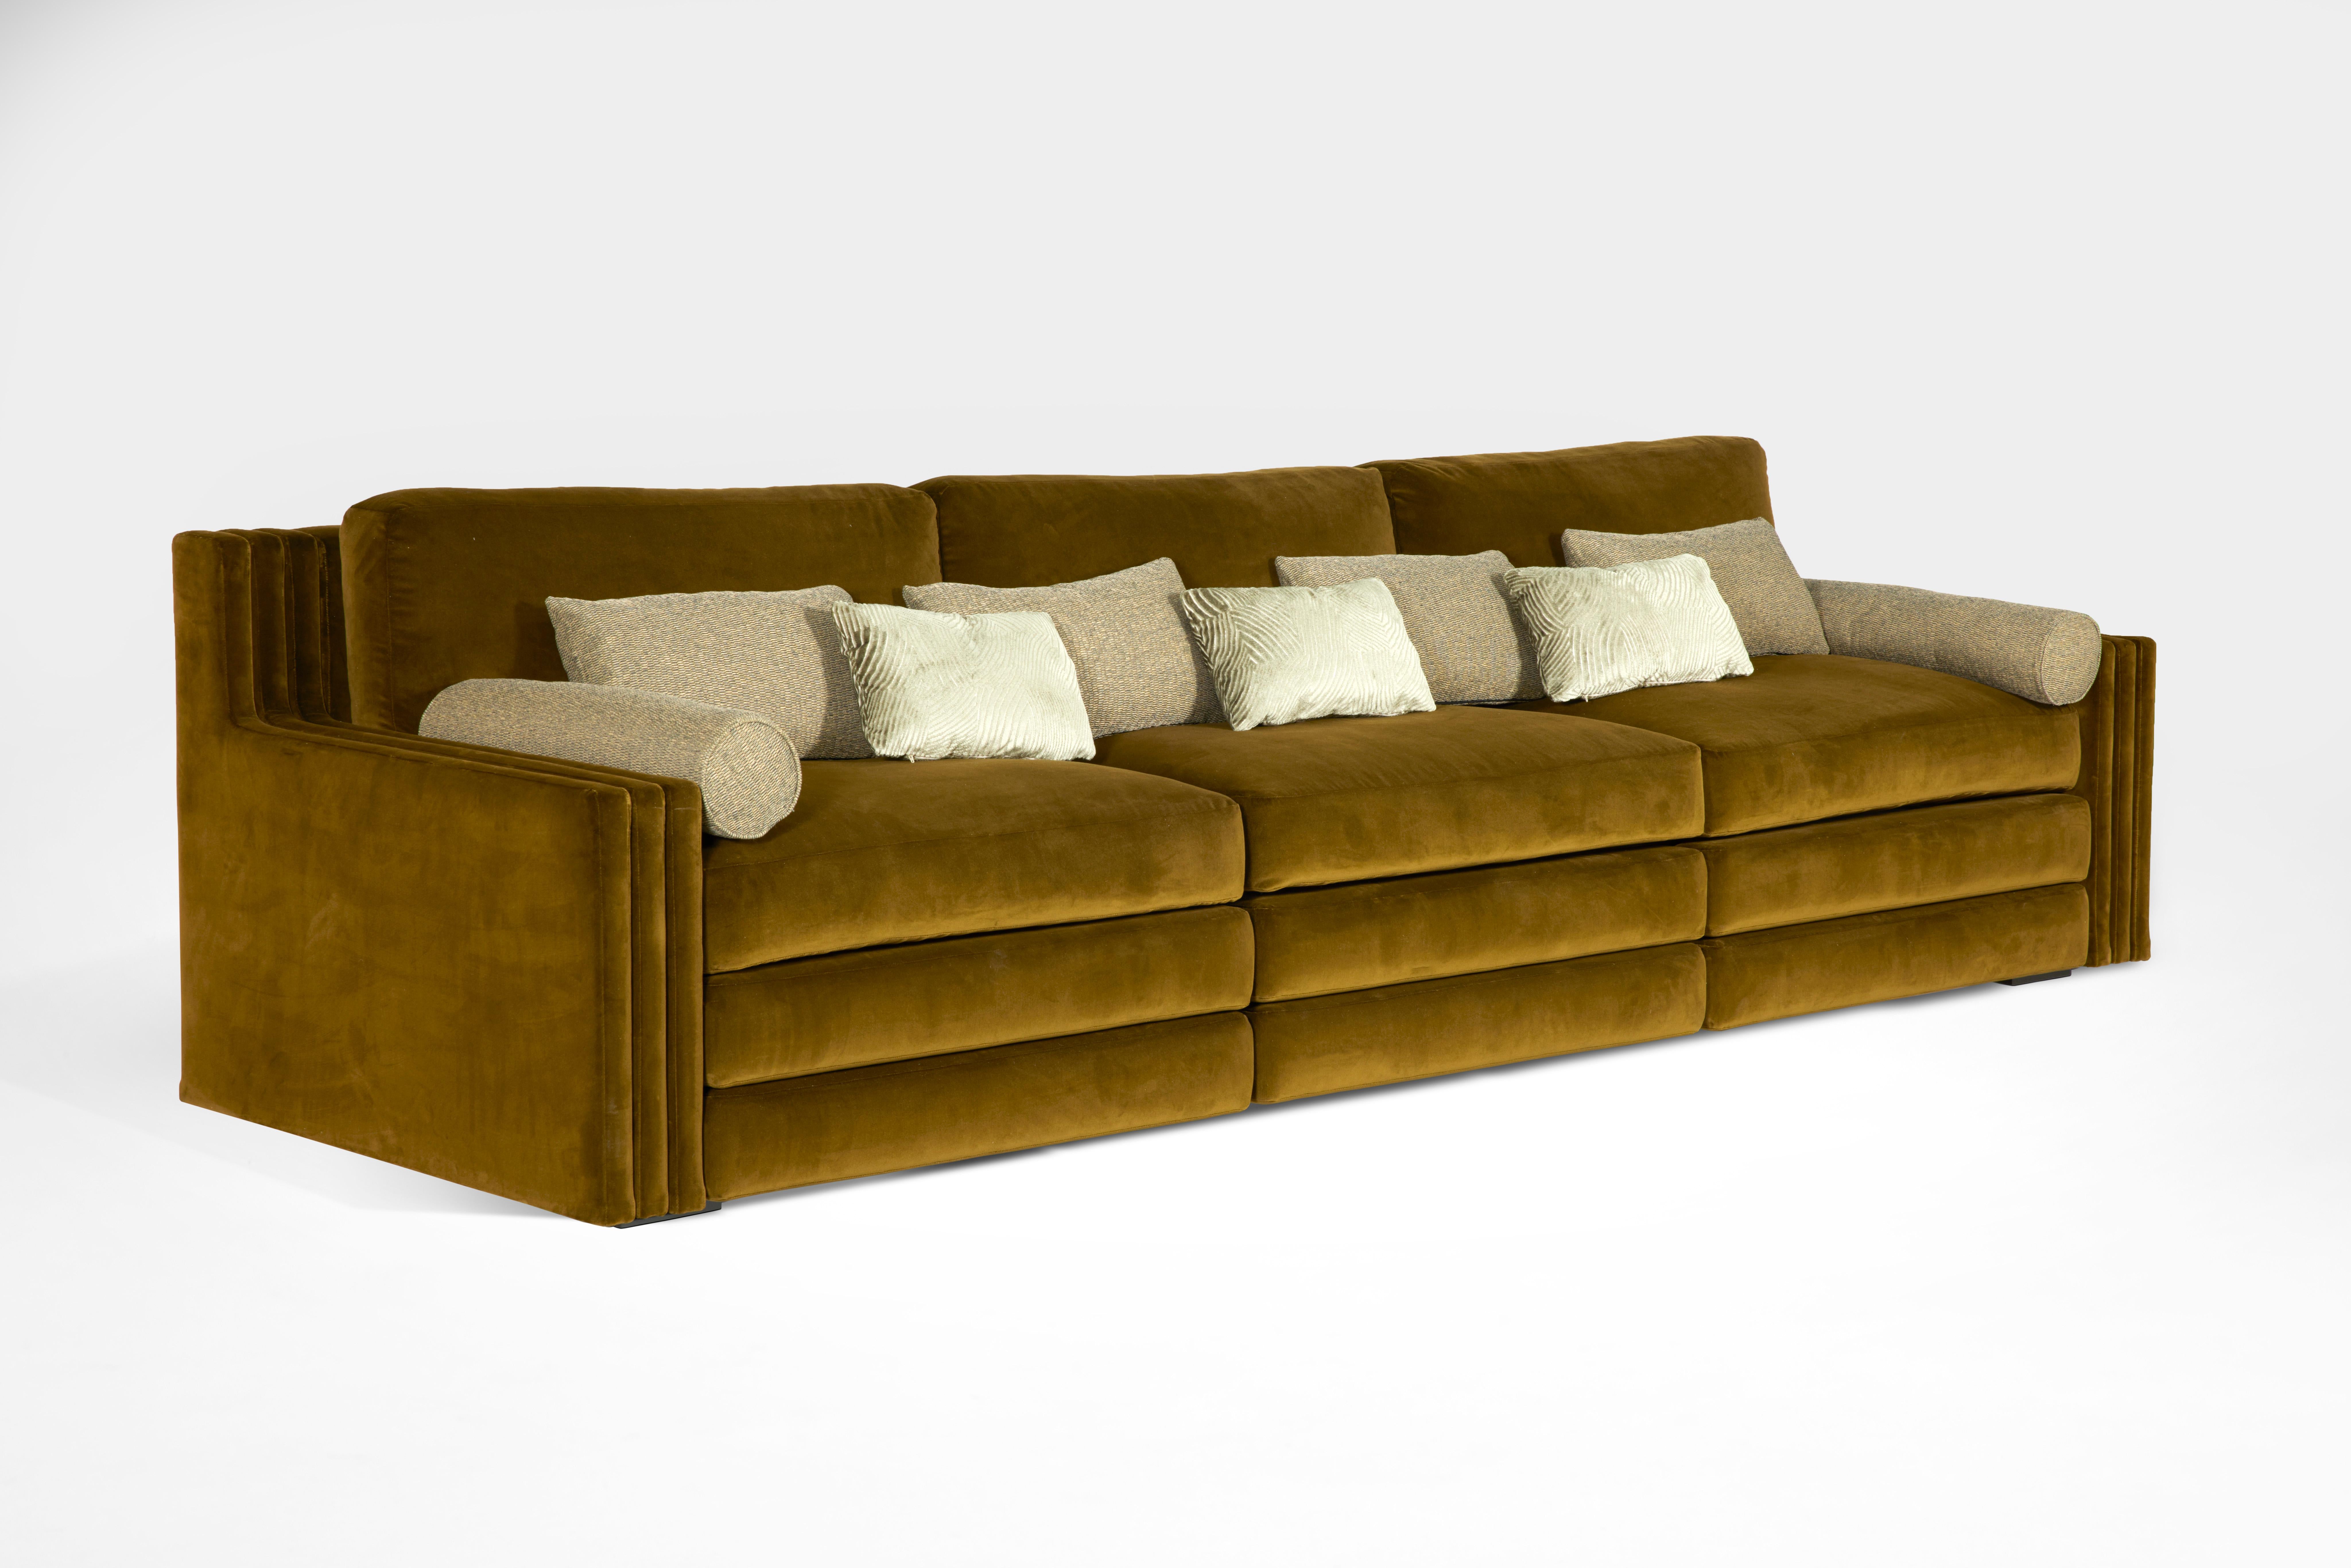 Von Laura Gonzalez entworfenes Sofa mit dreifacher Armlehne, komplett mit einem Stoff des französischen Maison Pierre Frey bezogen. Mit einer unglaublich bequemen Polsterung und einer weichen Struktur aus nicht verformbarem Schaumstoff. Alle